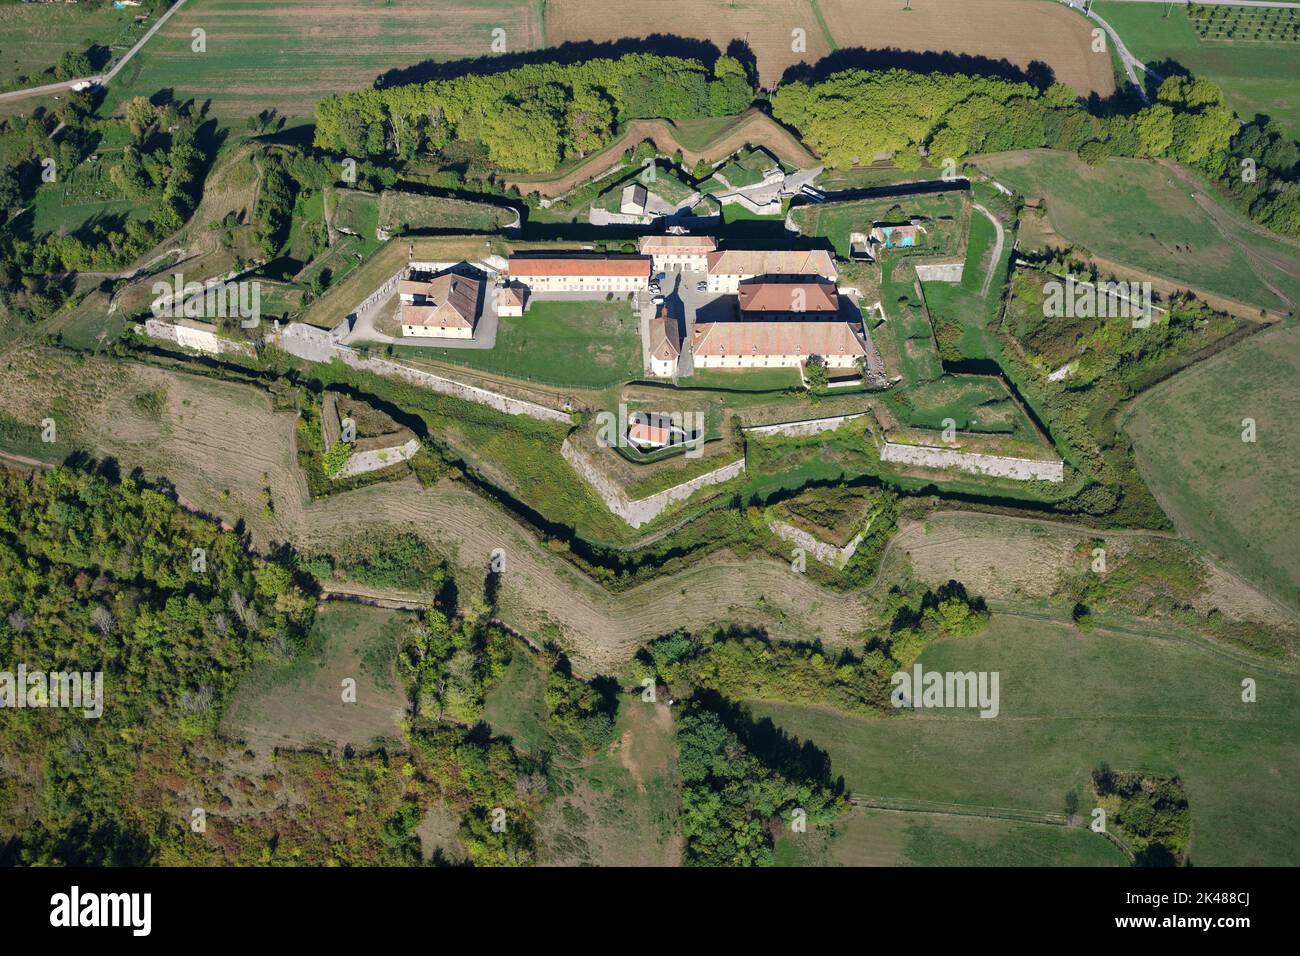 VISTA AÉREA. Histórico fortificación militar en una colina con su tierra en forma de estrella. Fort Barraux, Isère, Auvergne-Rhône-Alpes, Francia. Foto de stock